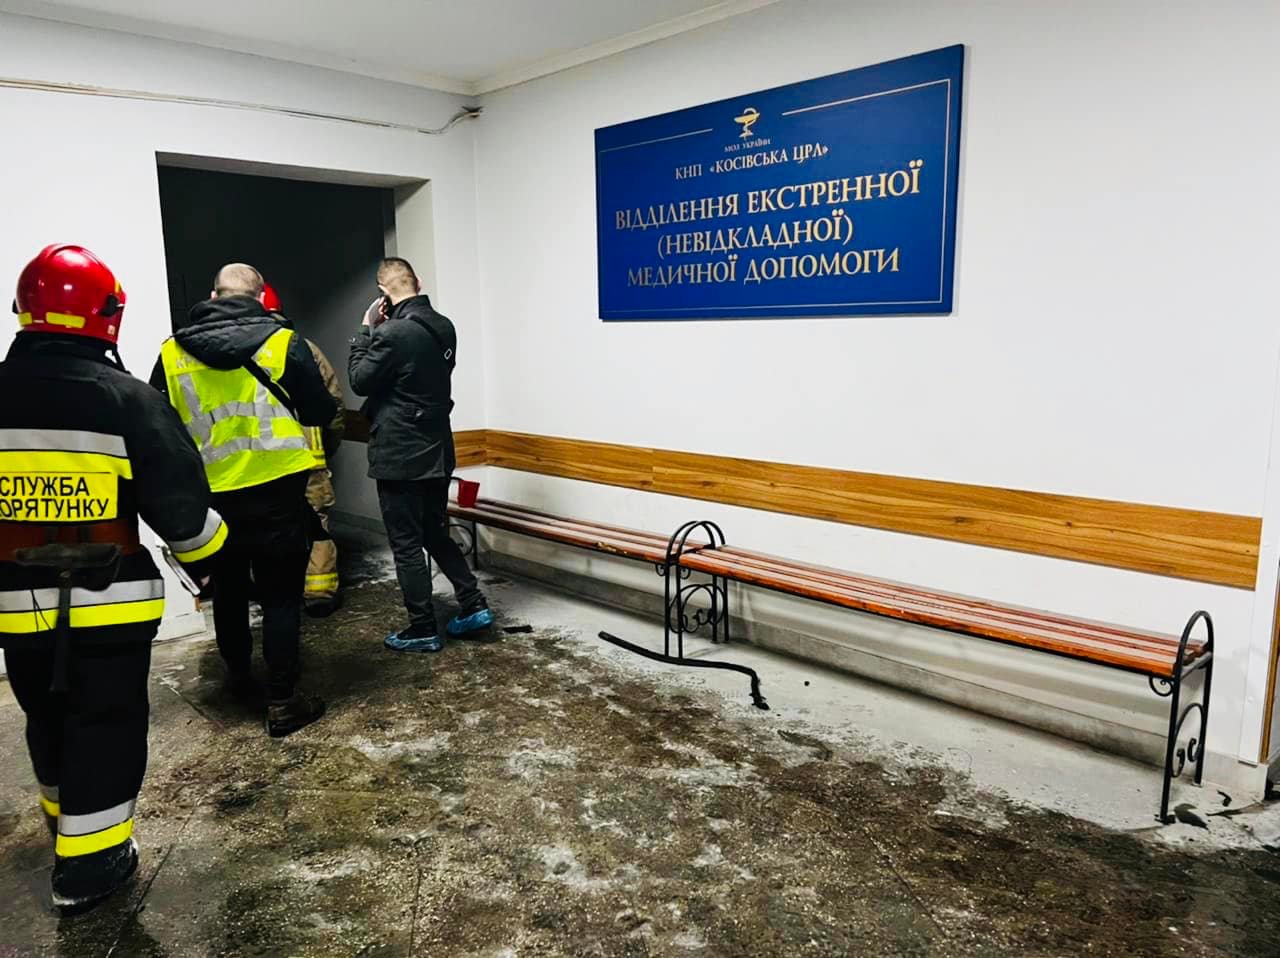 Після трагедії в Косові рятувальники перевірять всі лікарні